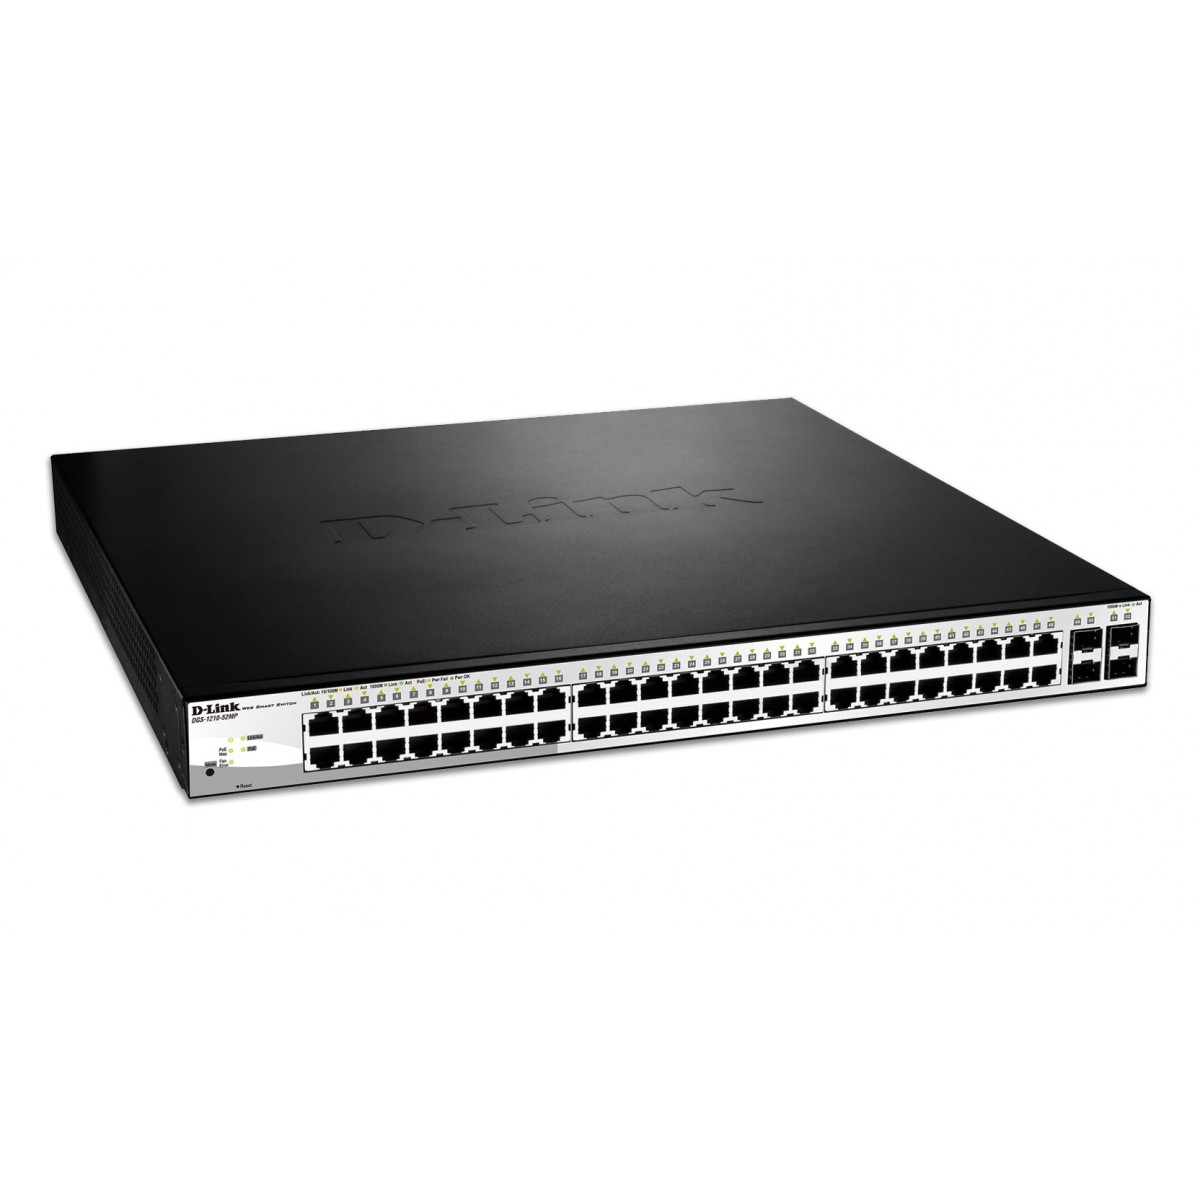 D-Link DGS-1210-52MP - Managed - L2 - Gigabit Ethernet (10/100/1000) - Power over Ethernet (PoE) - Rack mounting - 1U